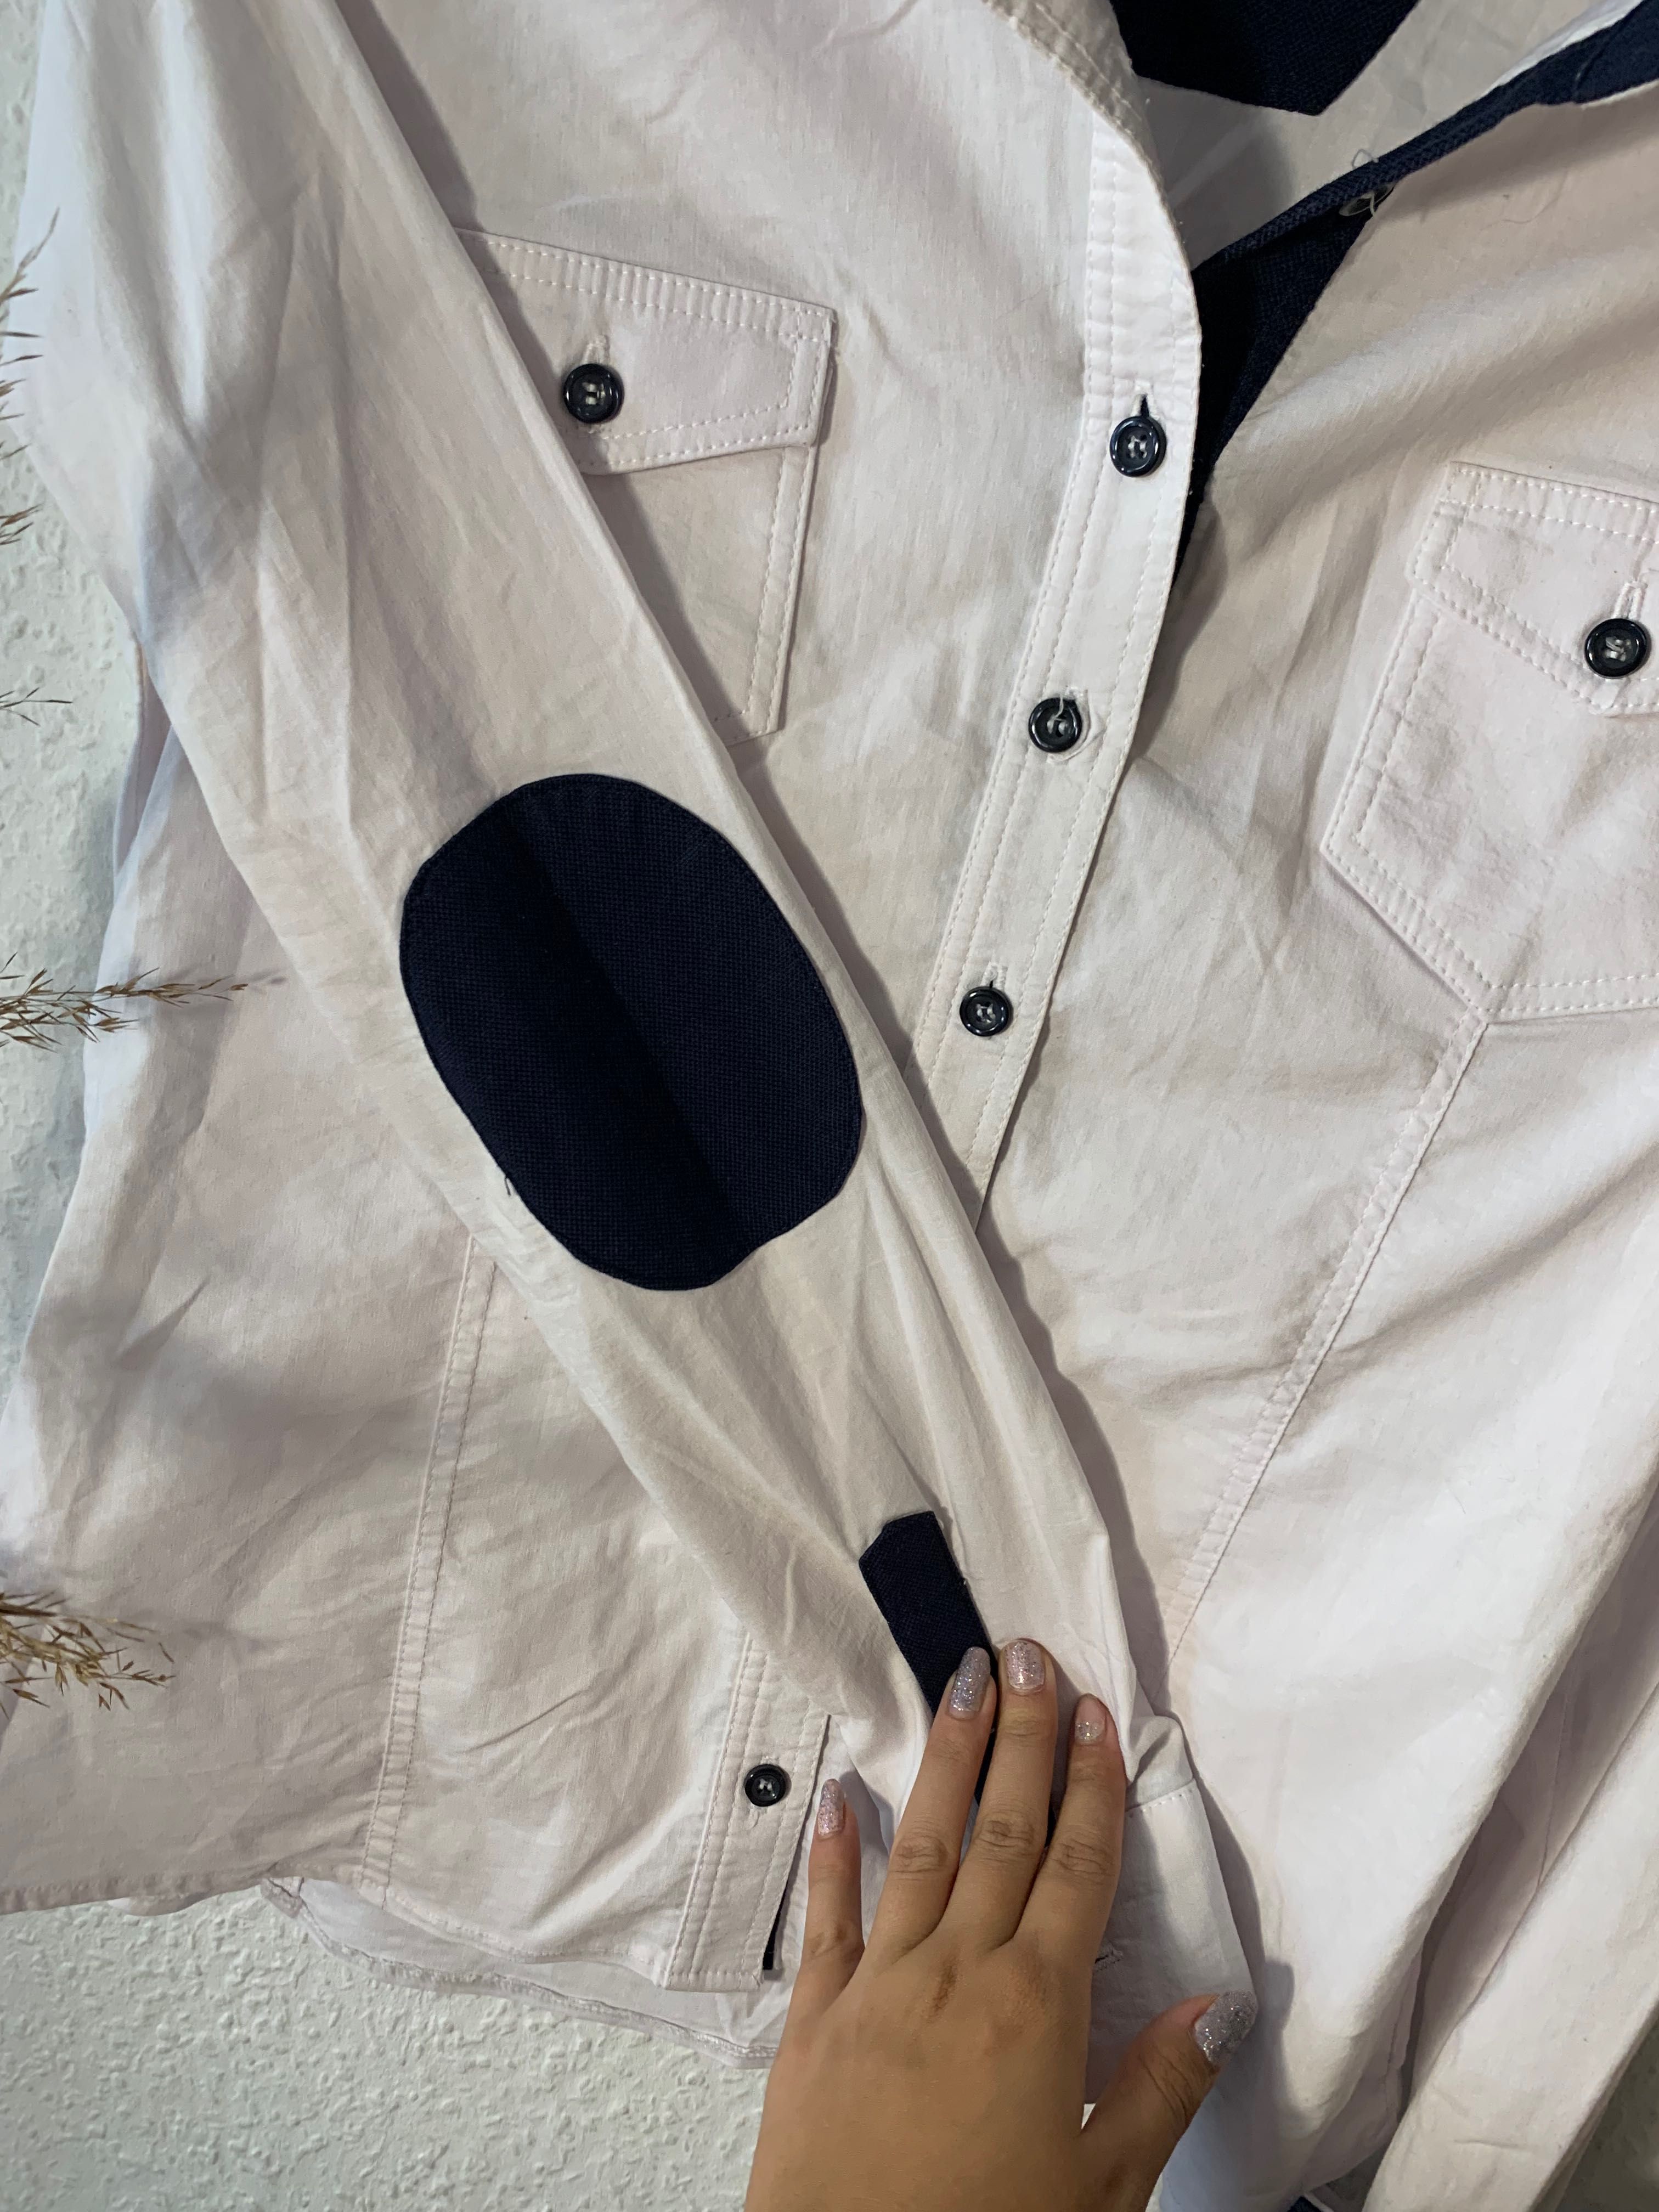 Koszula biała z latkami na łokciach
Guziki elegancka elastyczna